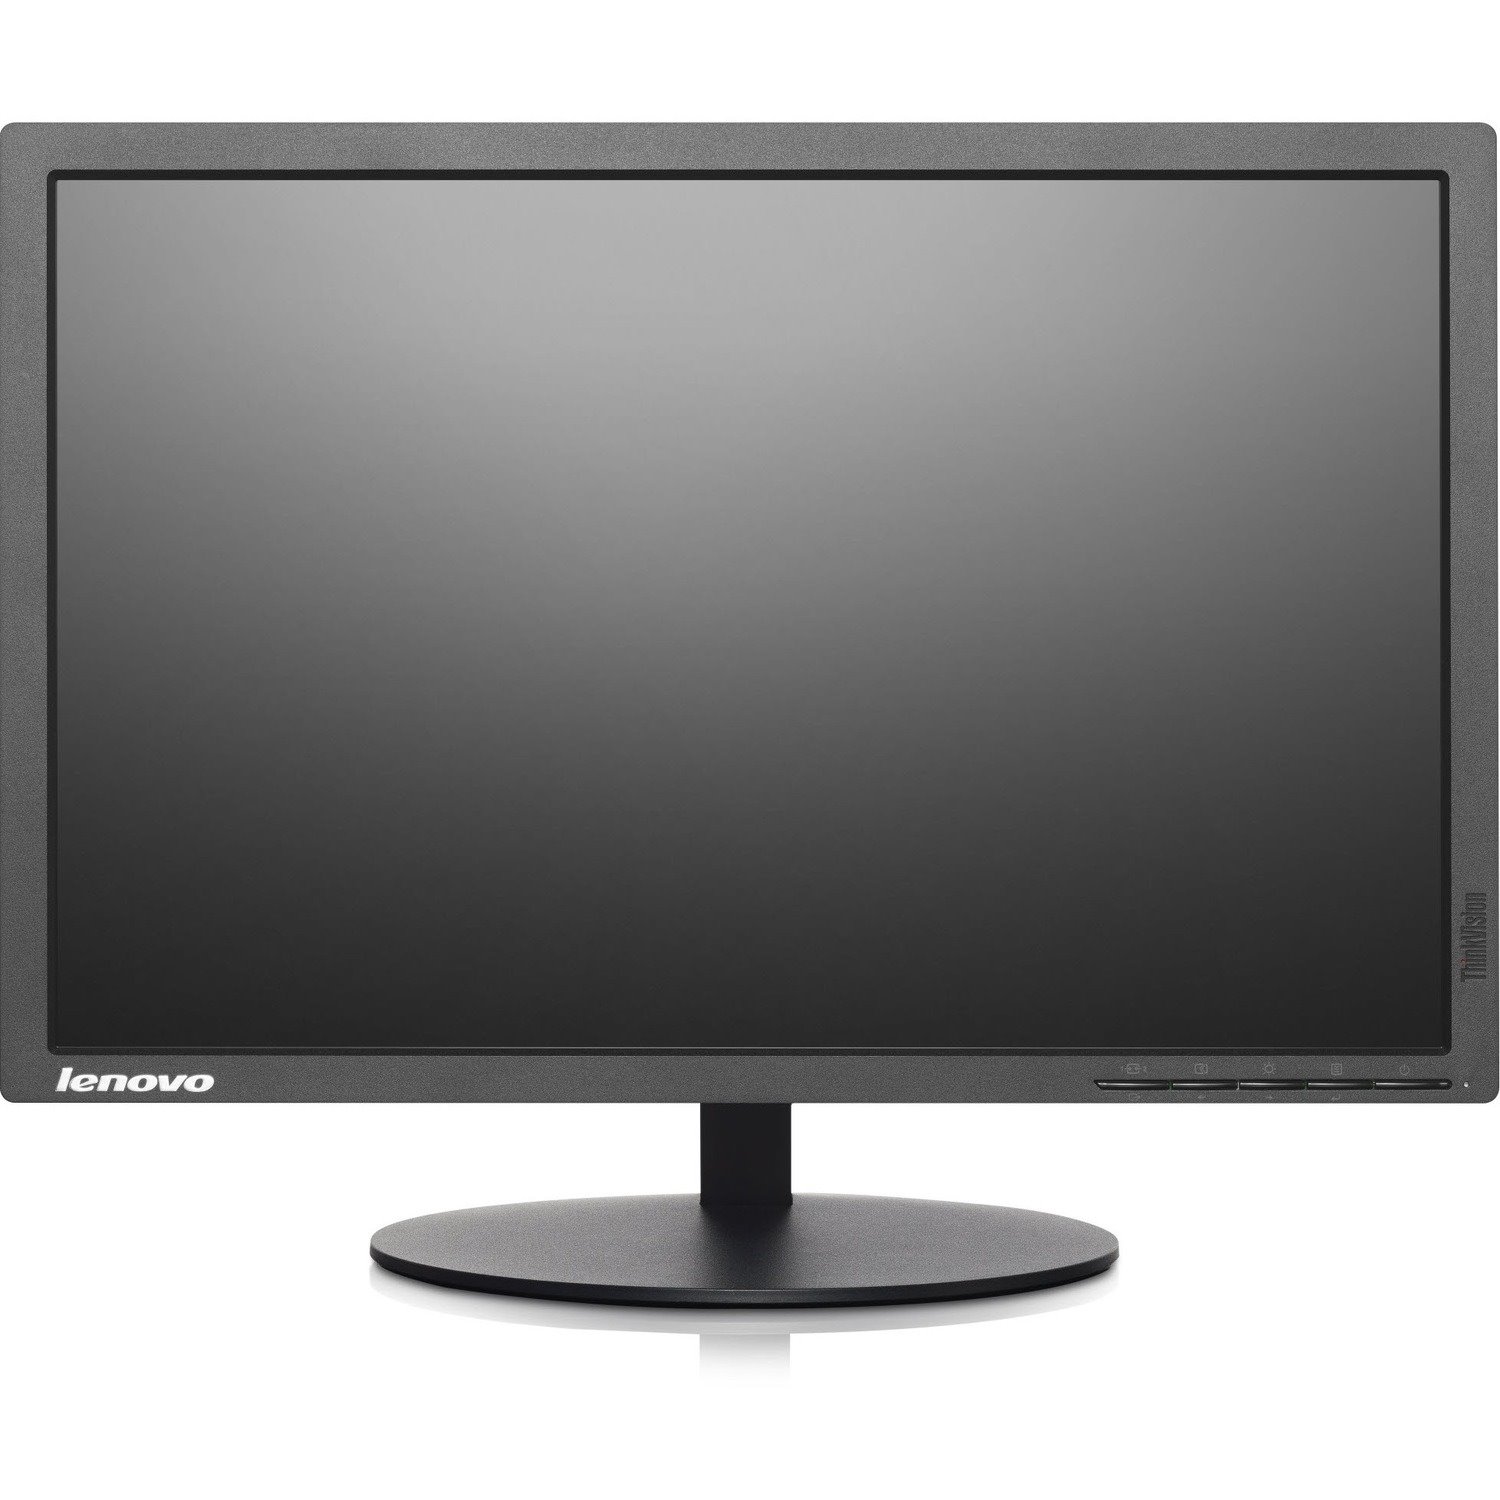 Lenovo ThinkVision T2054p 19.5" WXGA+ LED LCD Monitor - 16:10 - Raven Black